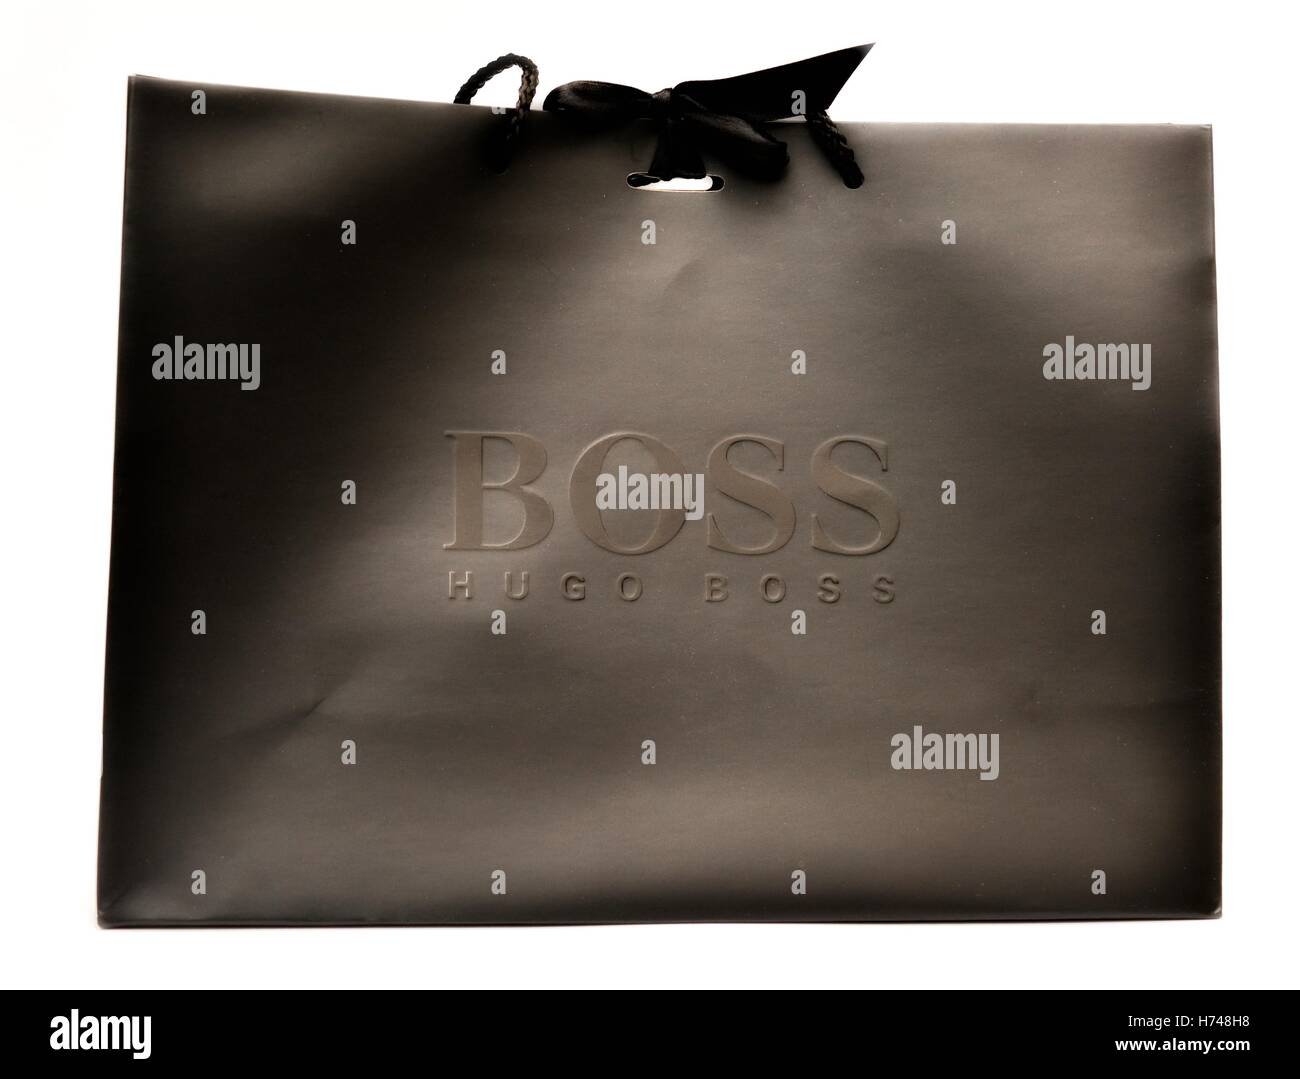 Hugo Boss gift carrier bag Stock Photo 